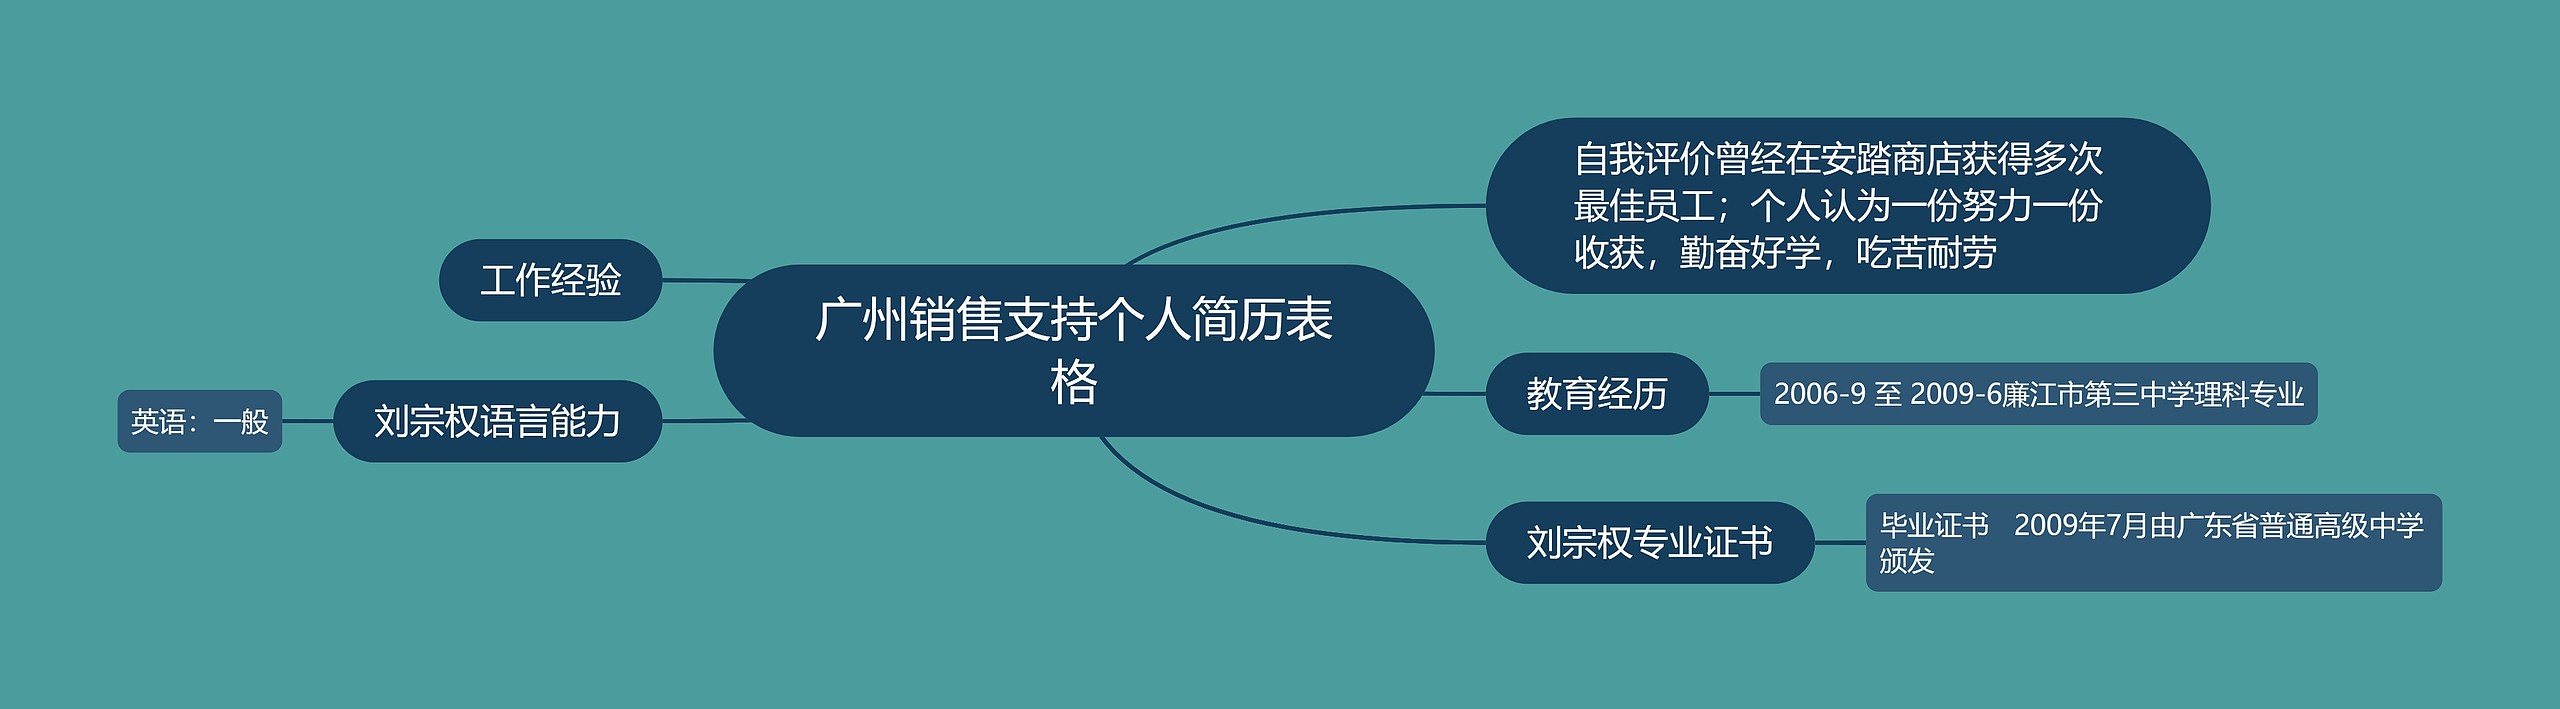 广州销售支持个人简历表格思维导图